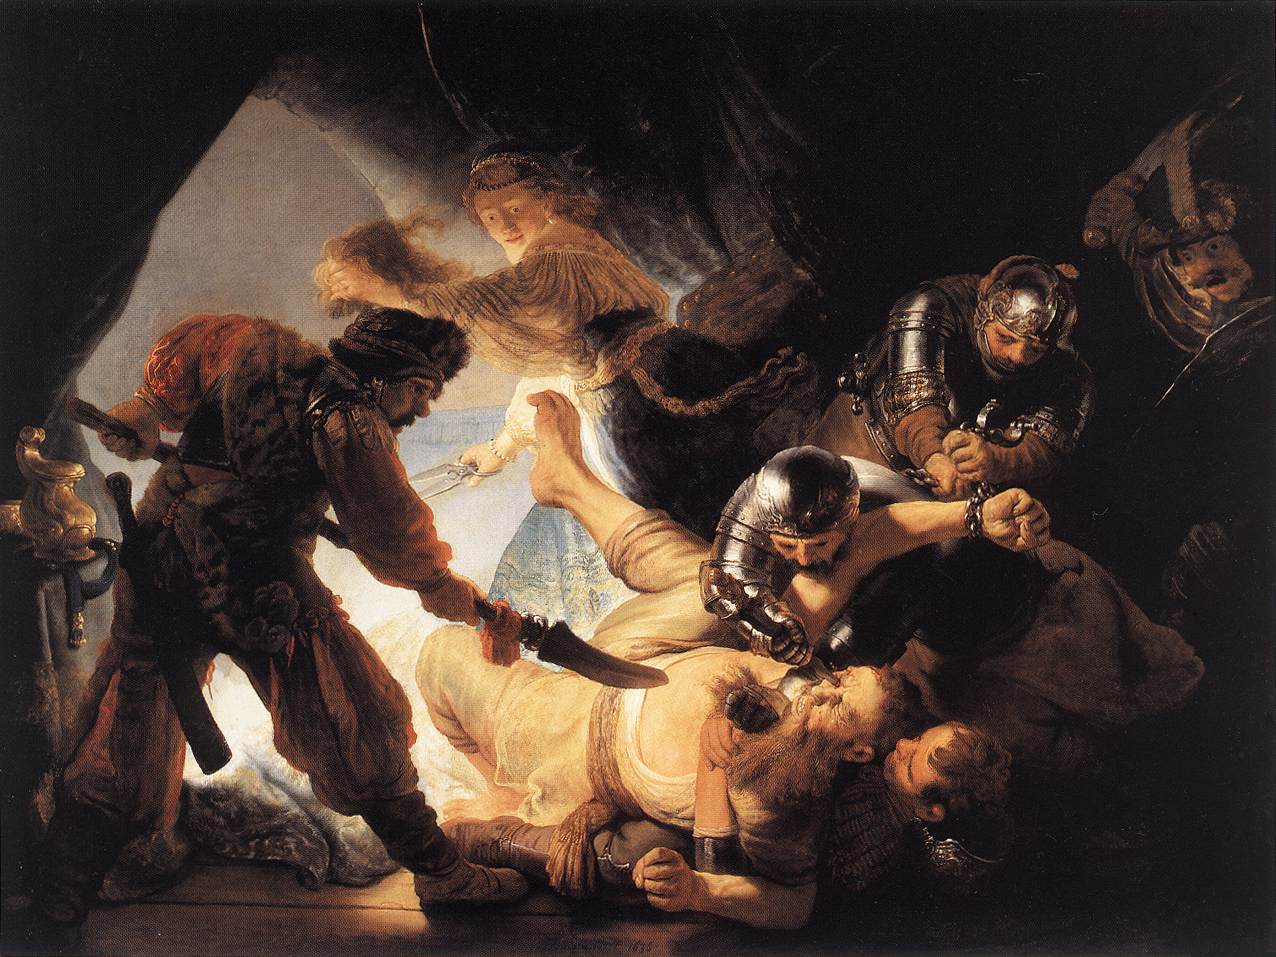 Image:Rembrandt The Blinding of Samson 1636.jpg